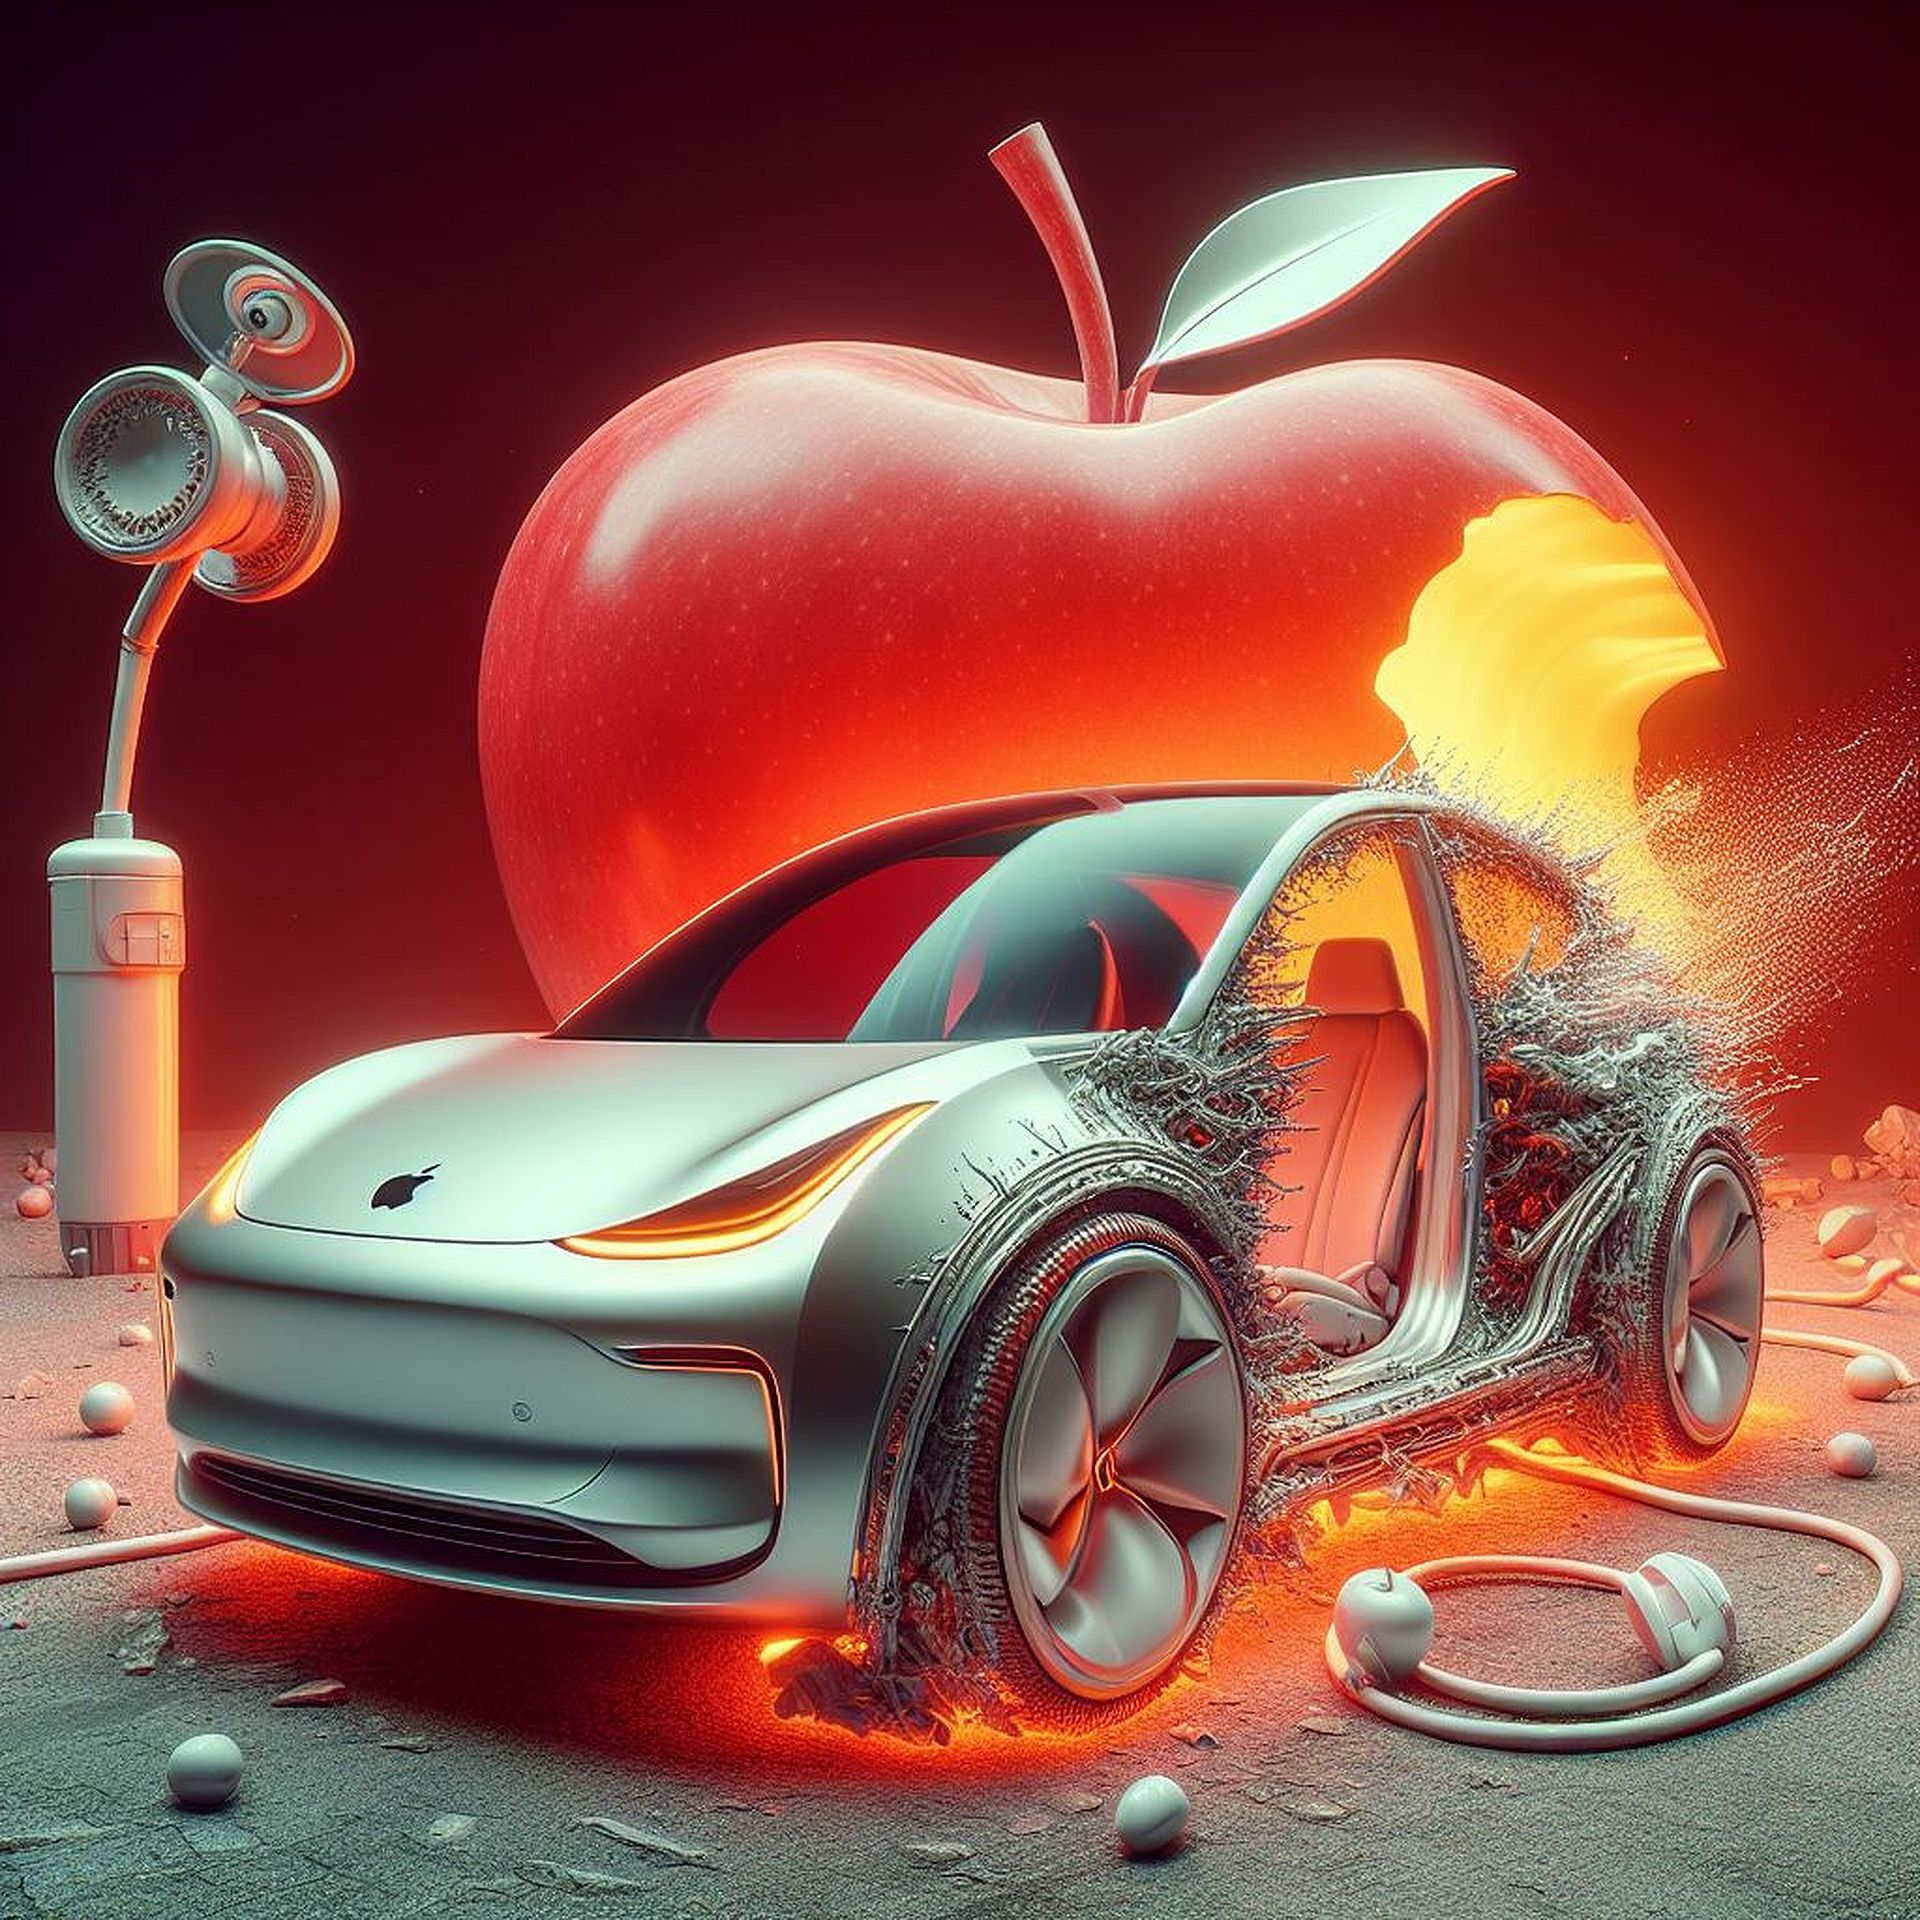 AI killed Apple's electric car